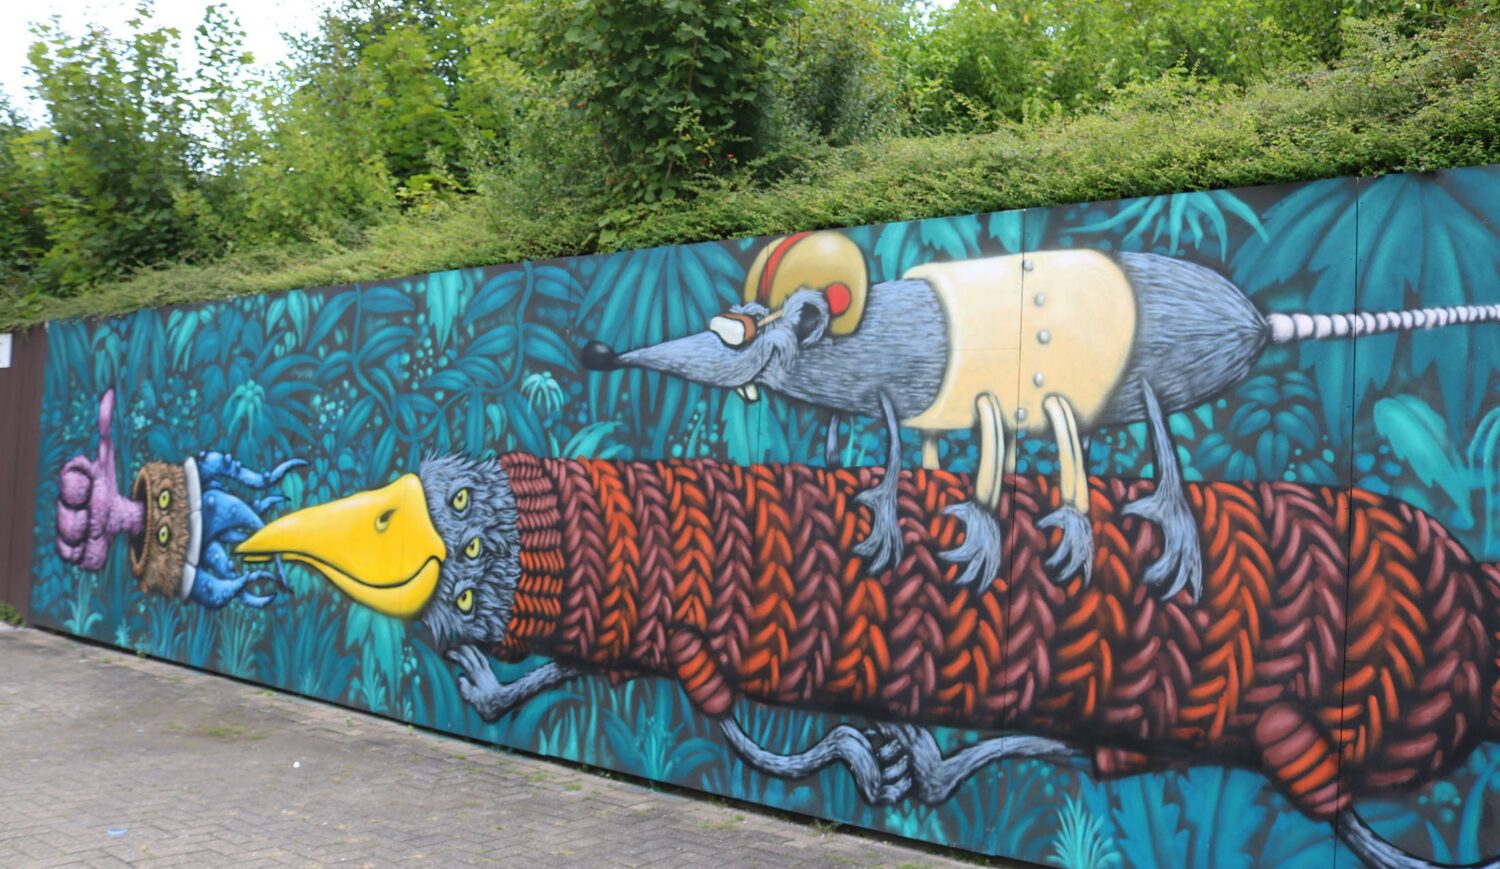 Stolze 27 Meter breit ist die Welcome Wall der ReArtSchule, seit 2017 ein ArtSpot in Einbeck. Künstler auch hier wieder Philipp Jordan aus Utrecht